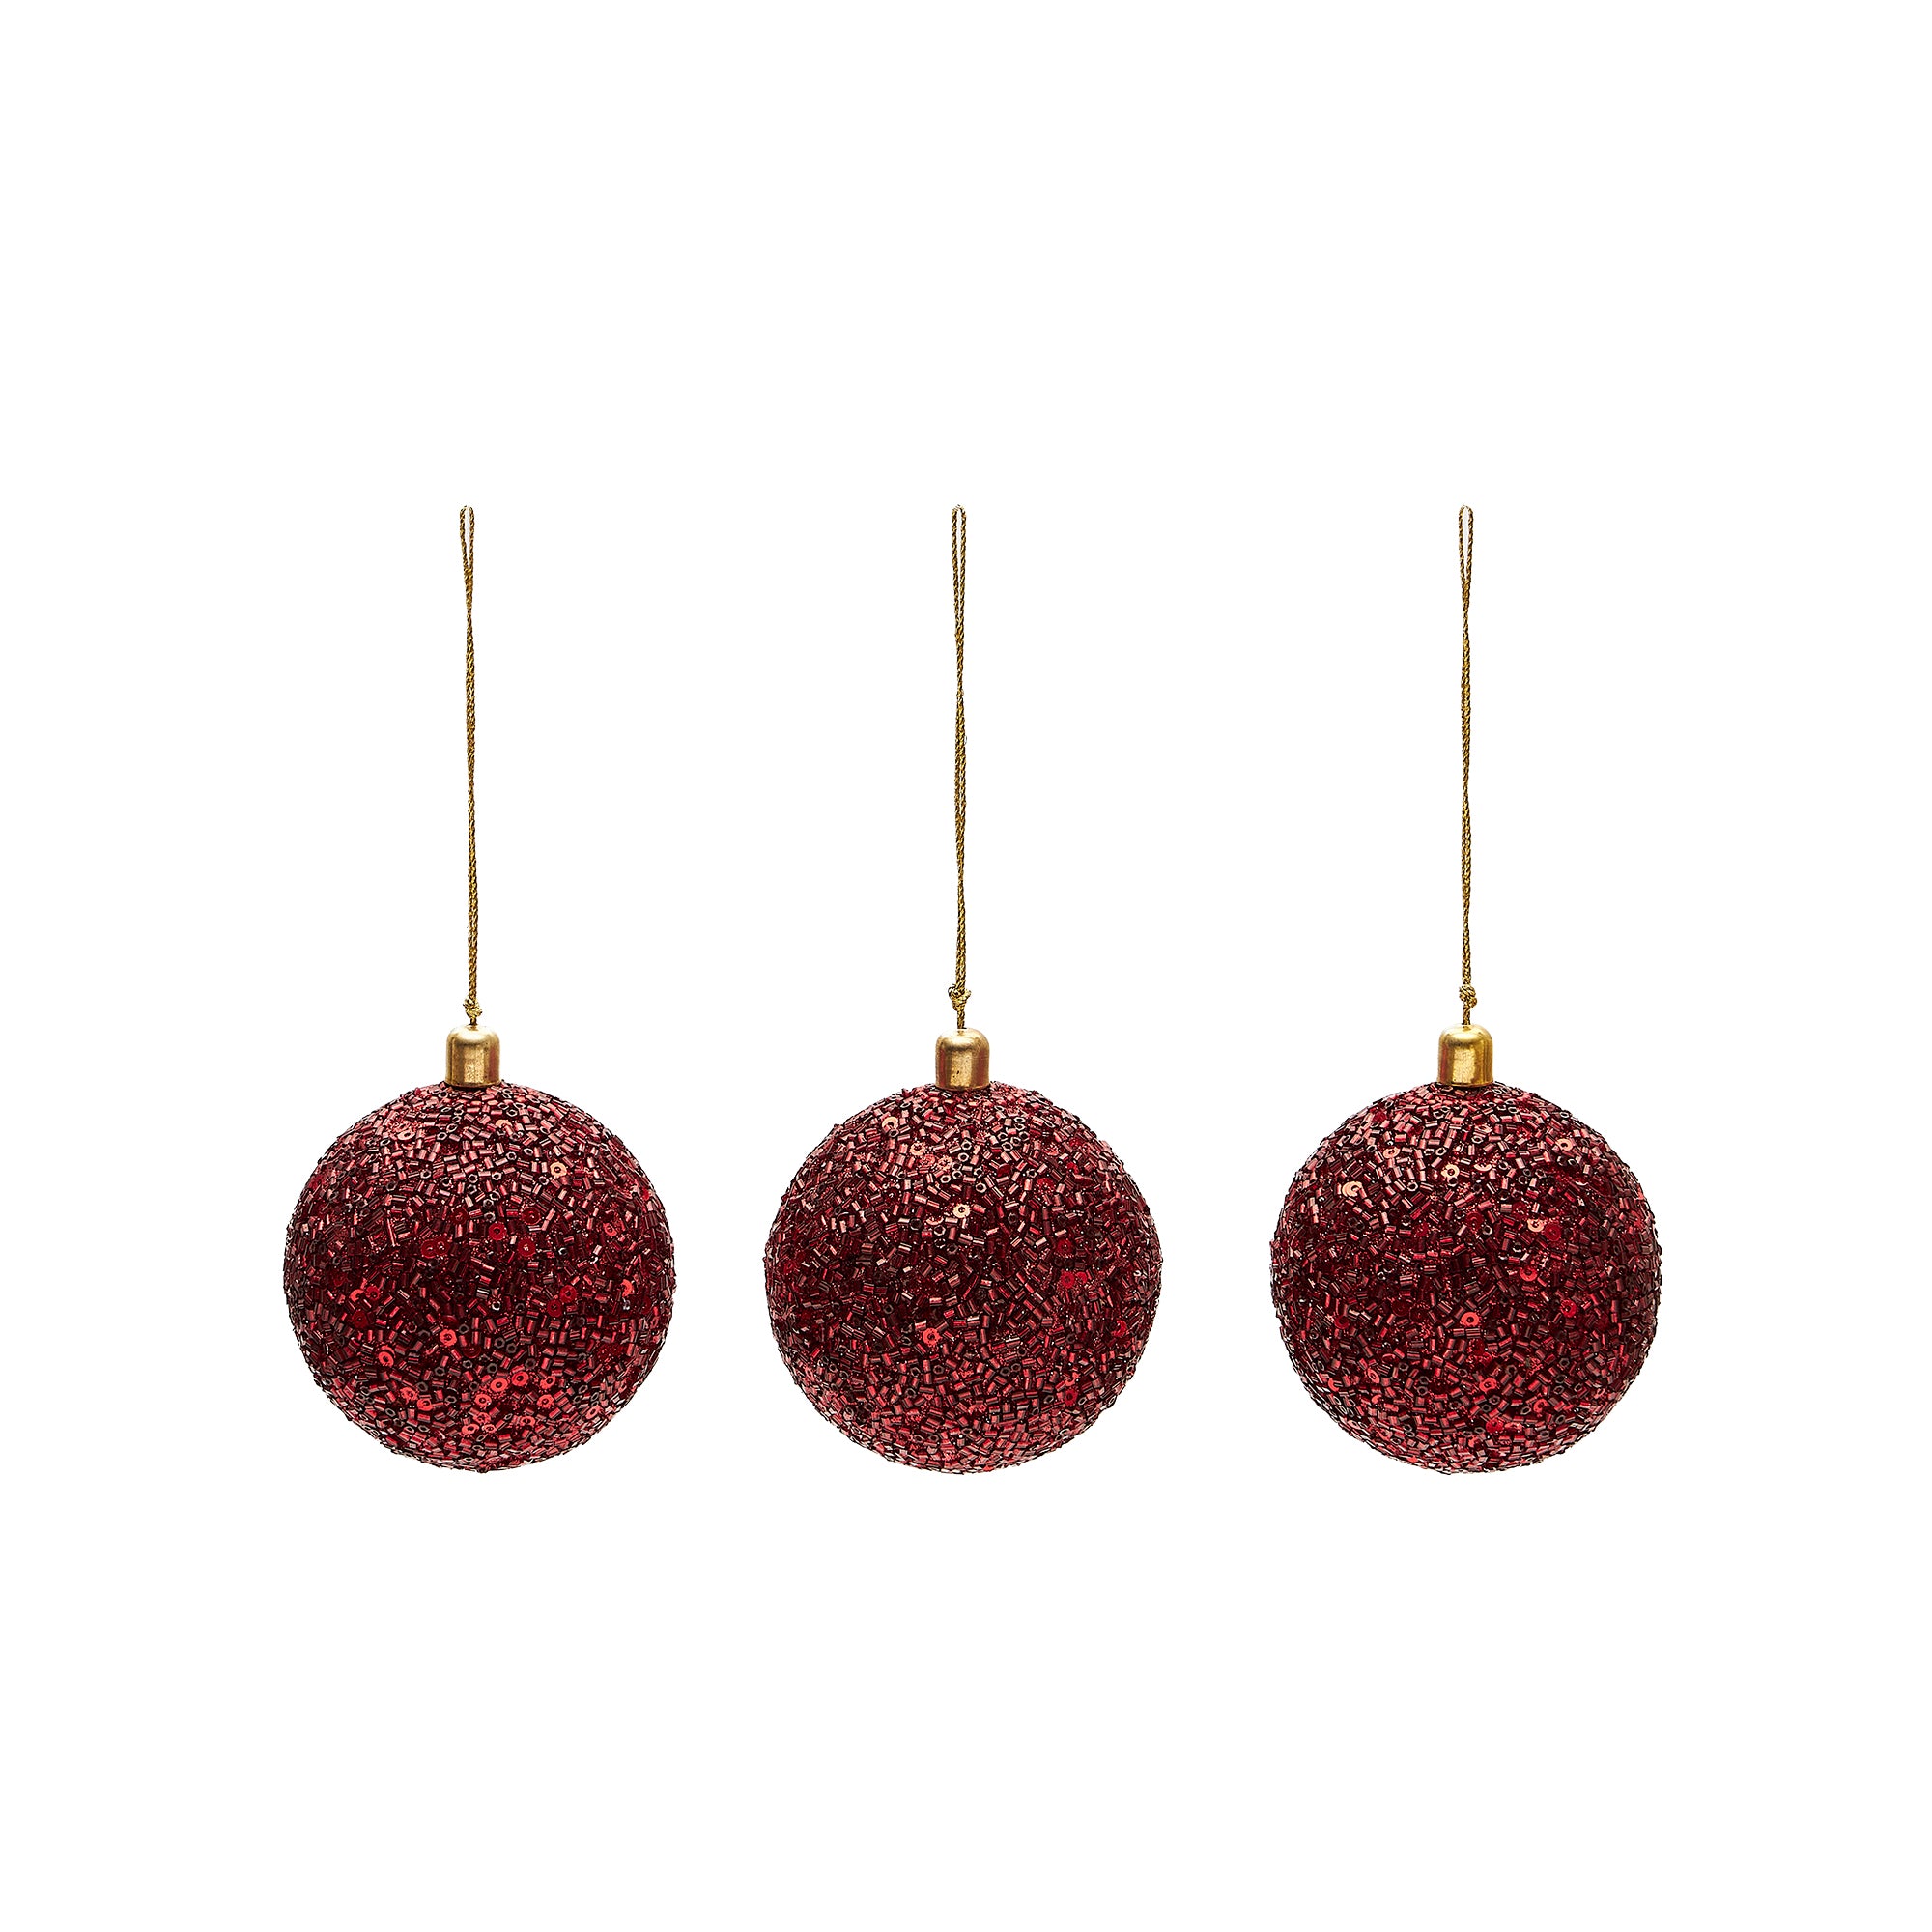 Briam set of 3 large red decorative pendant balls